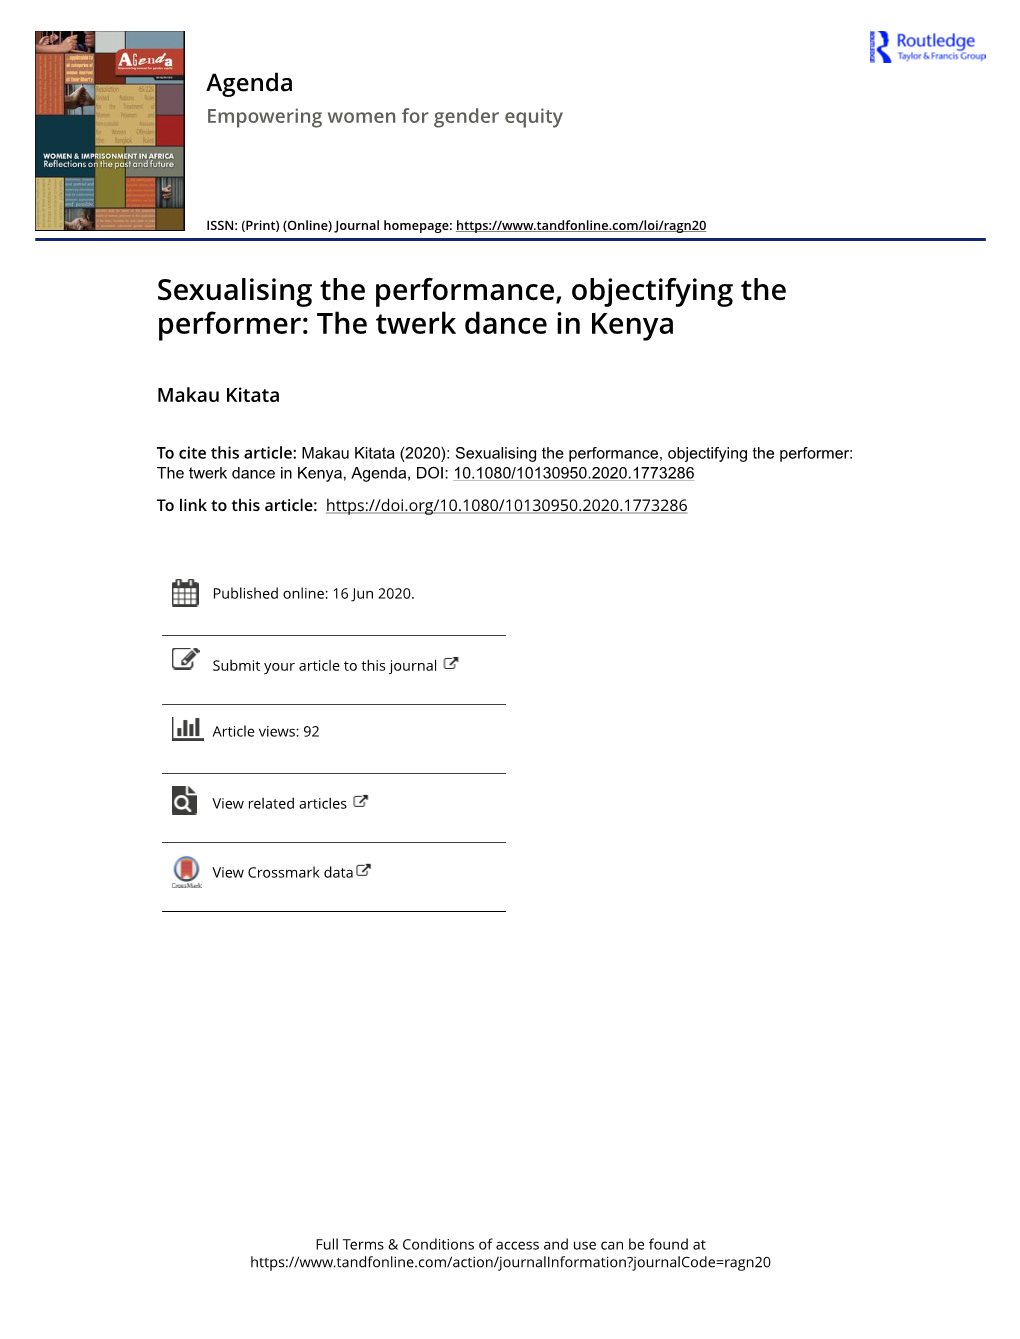 The Twerk Dance in Kenya